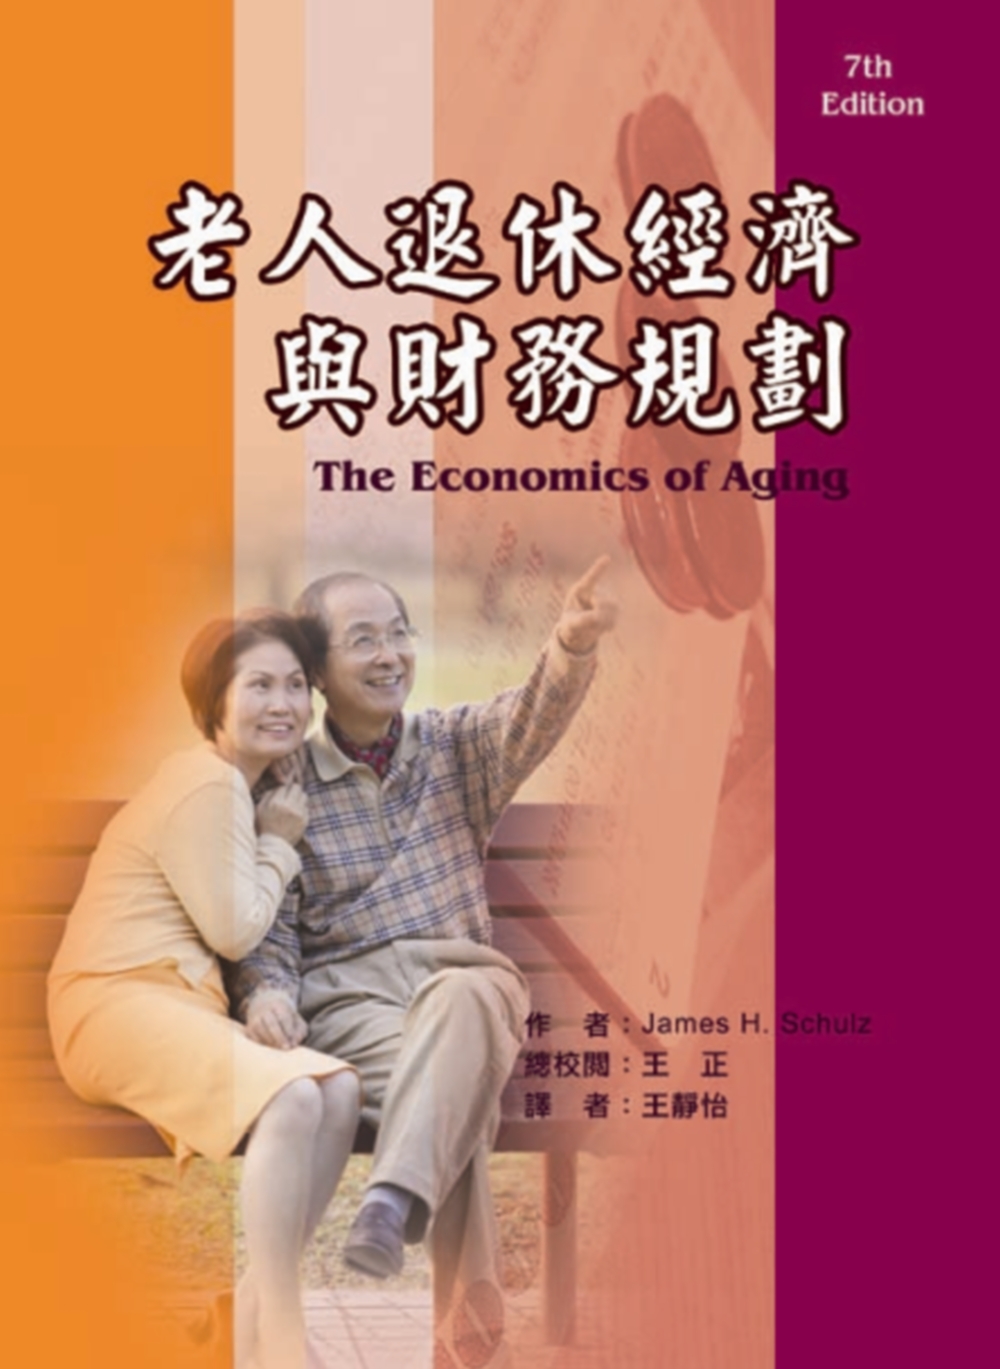 老人退休經濟與財務規劃